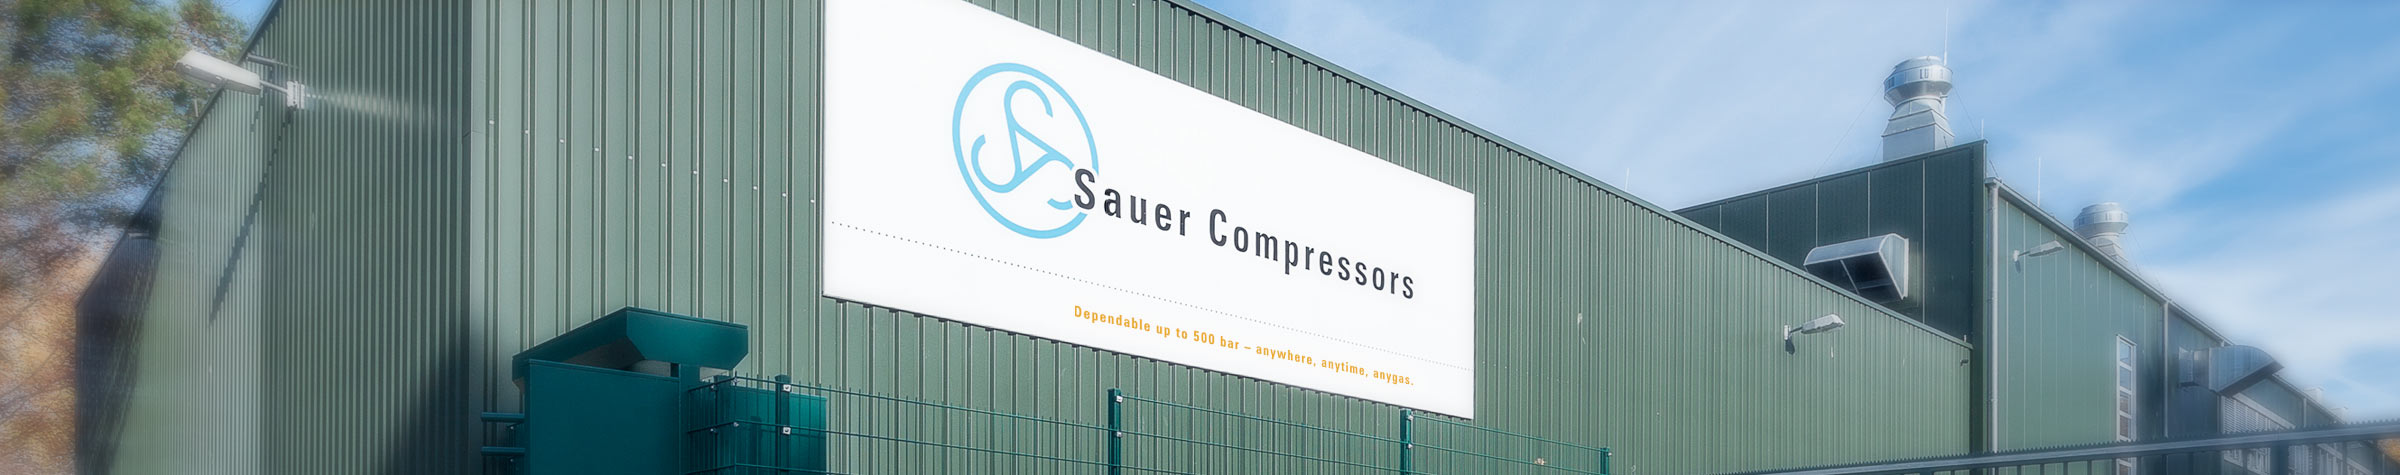 J.P. Sauer & Sohn Maschinenbau GmbH